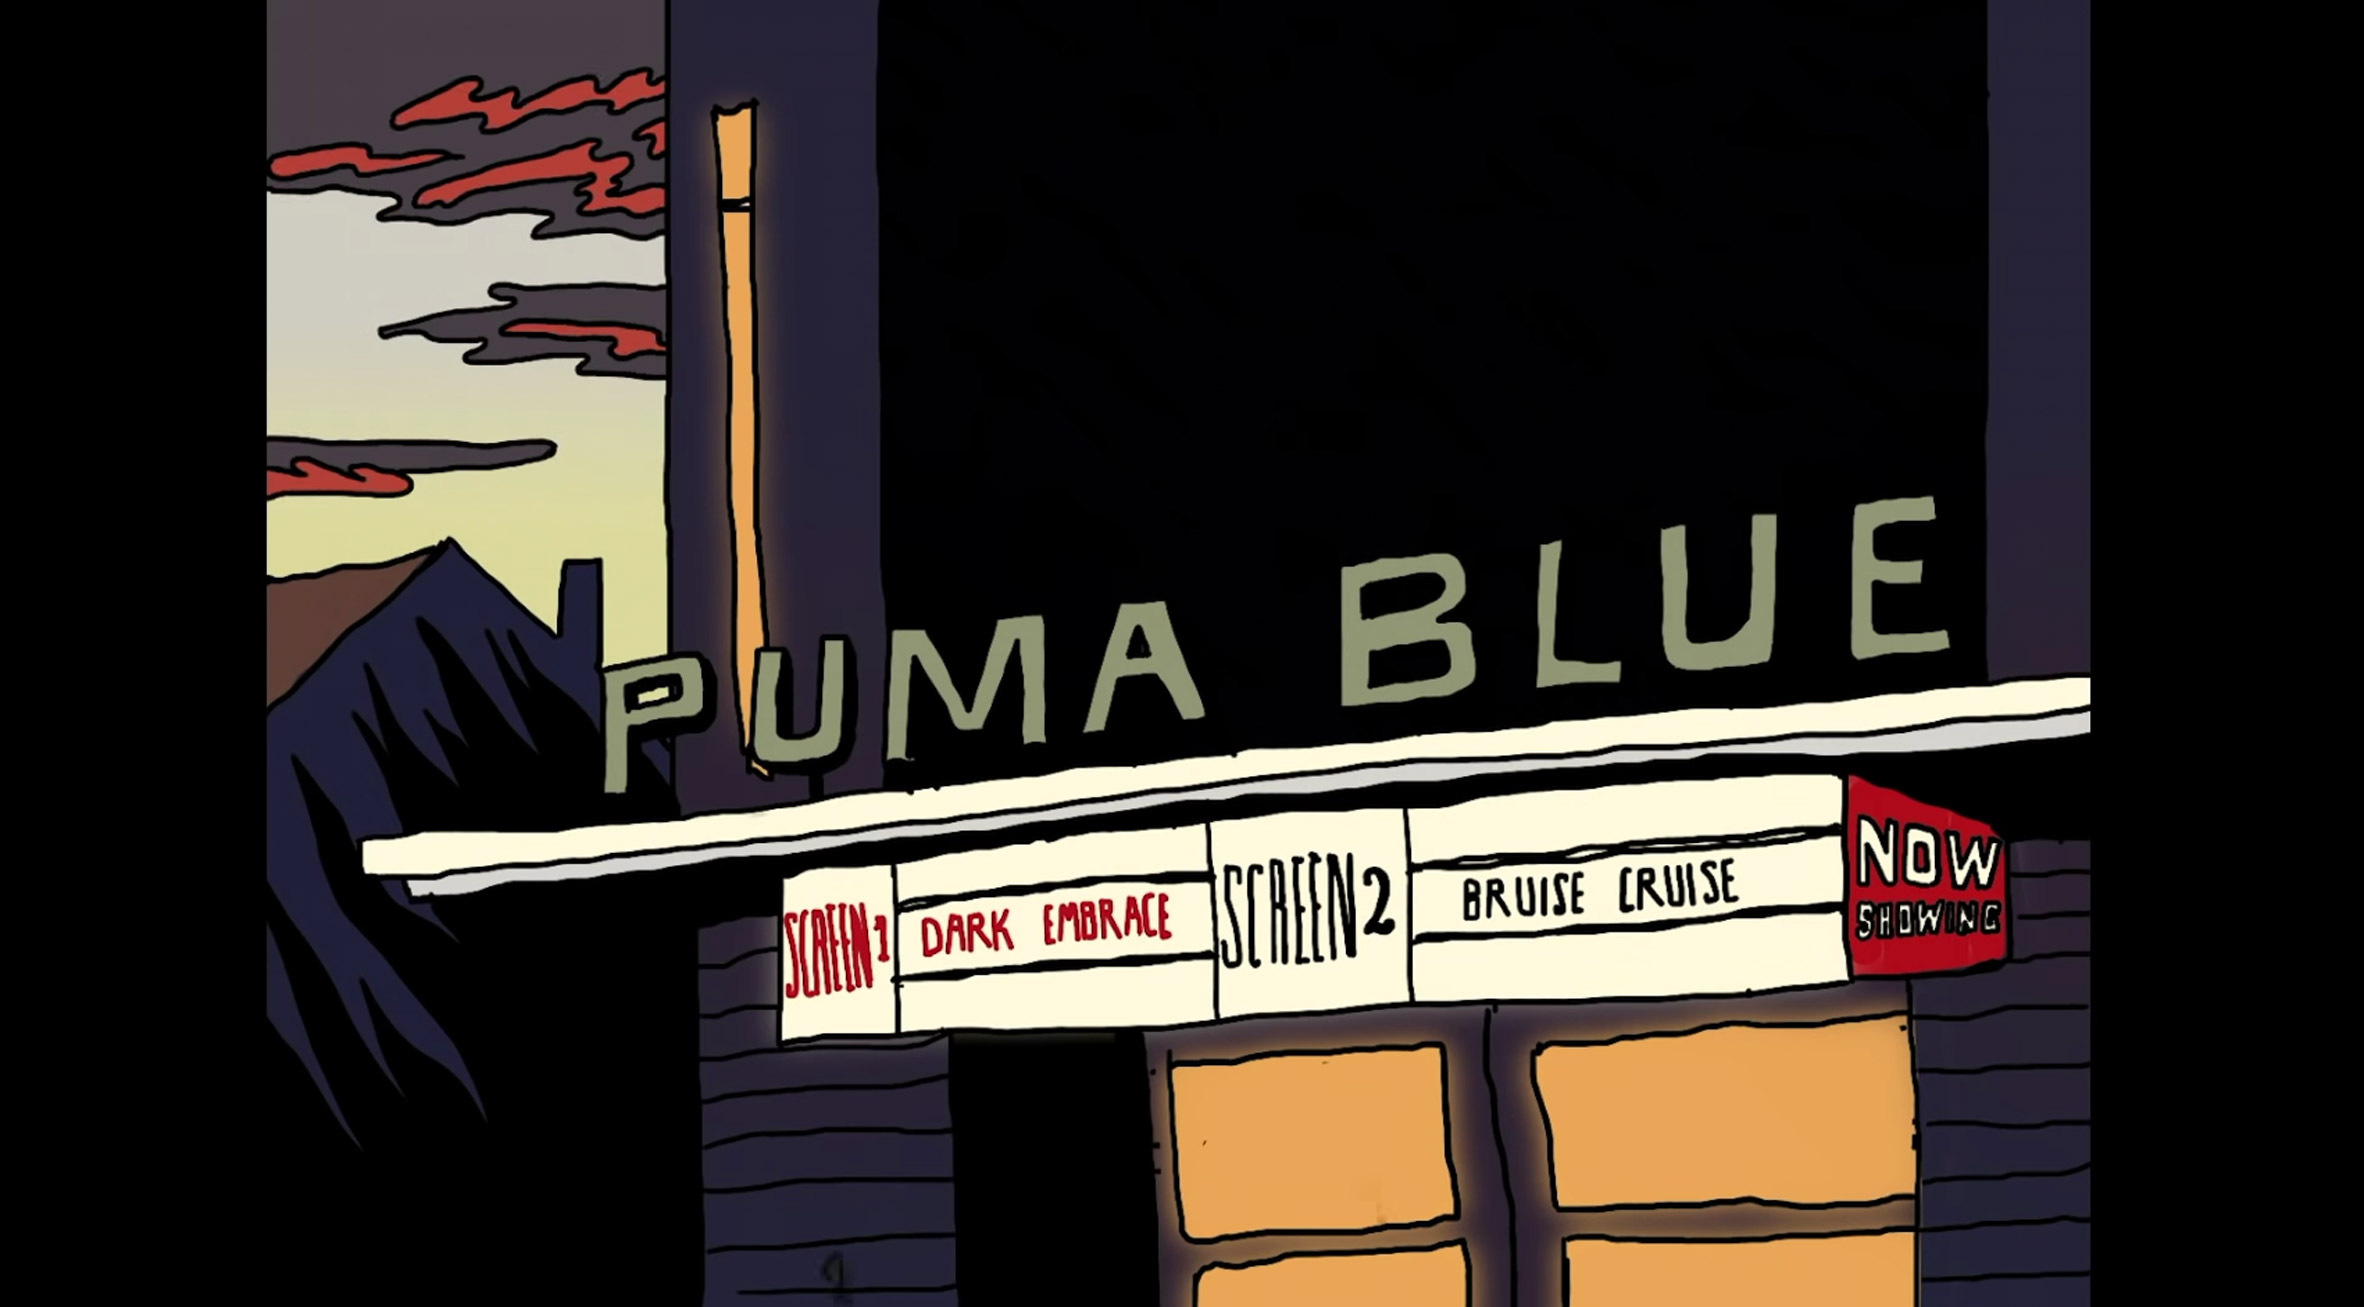 Puma Blue's Simpsons-esque music video explores feelings of depression